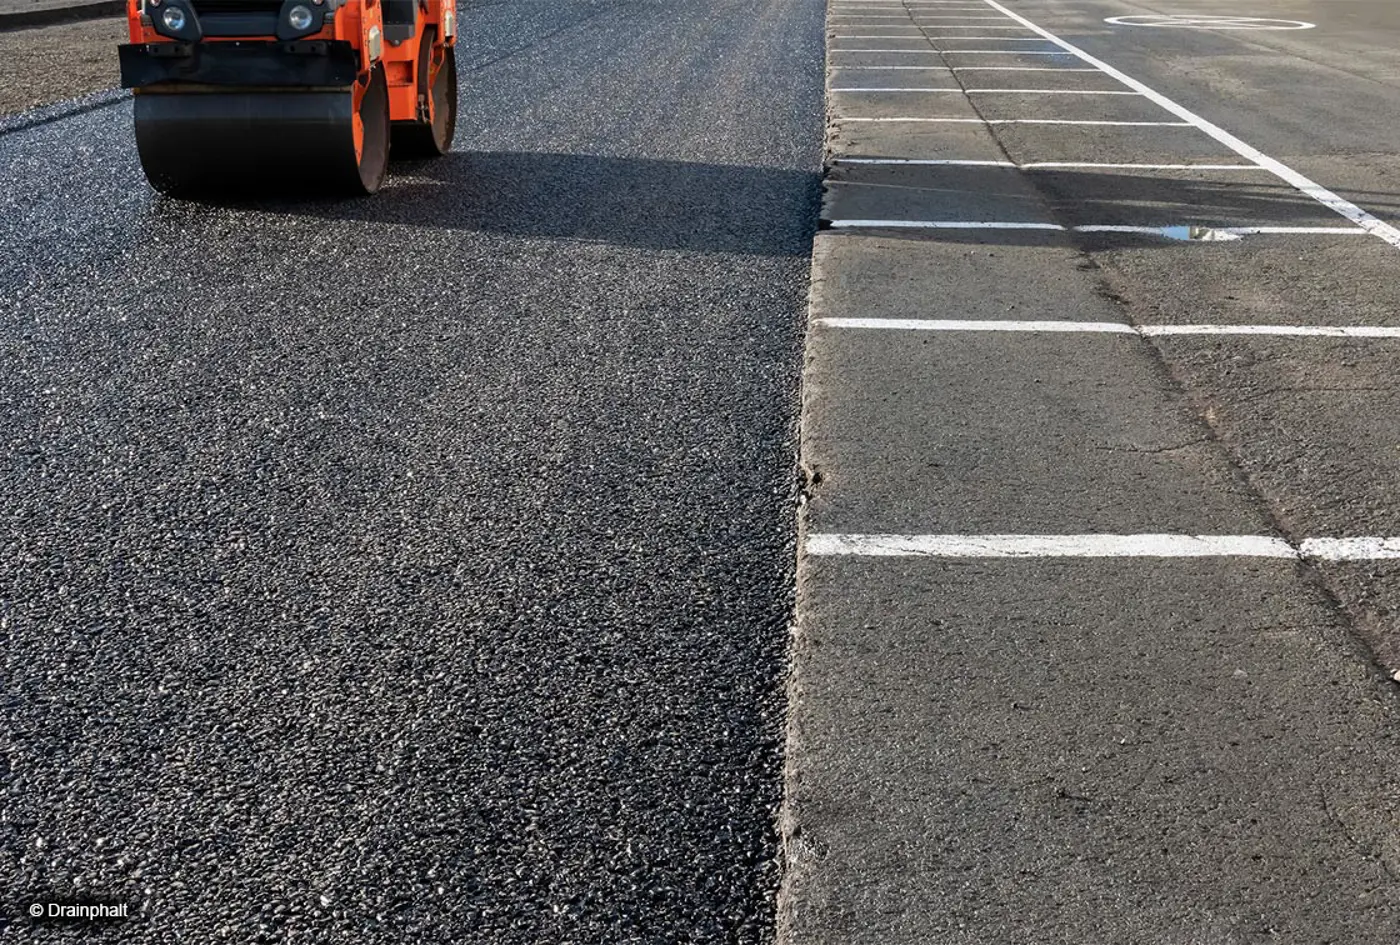 Waterdoorlatend asfalt voorkomt plasvorming en overstromingen - L'asphalte perméable à l'eau permet d'éviter les flaques et les inondations